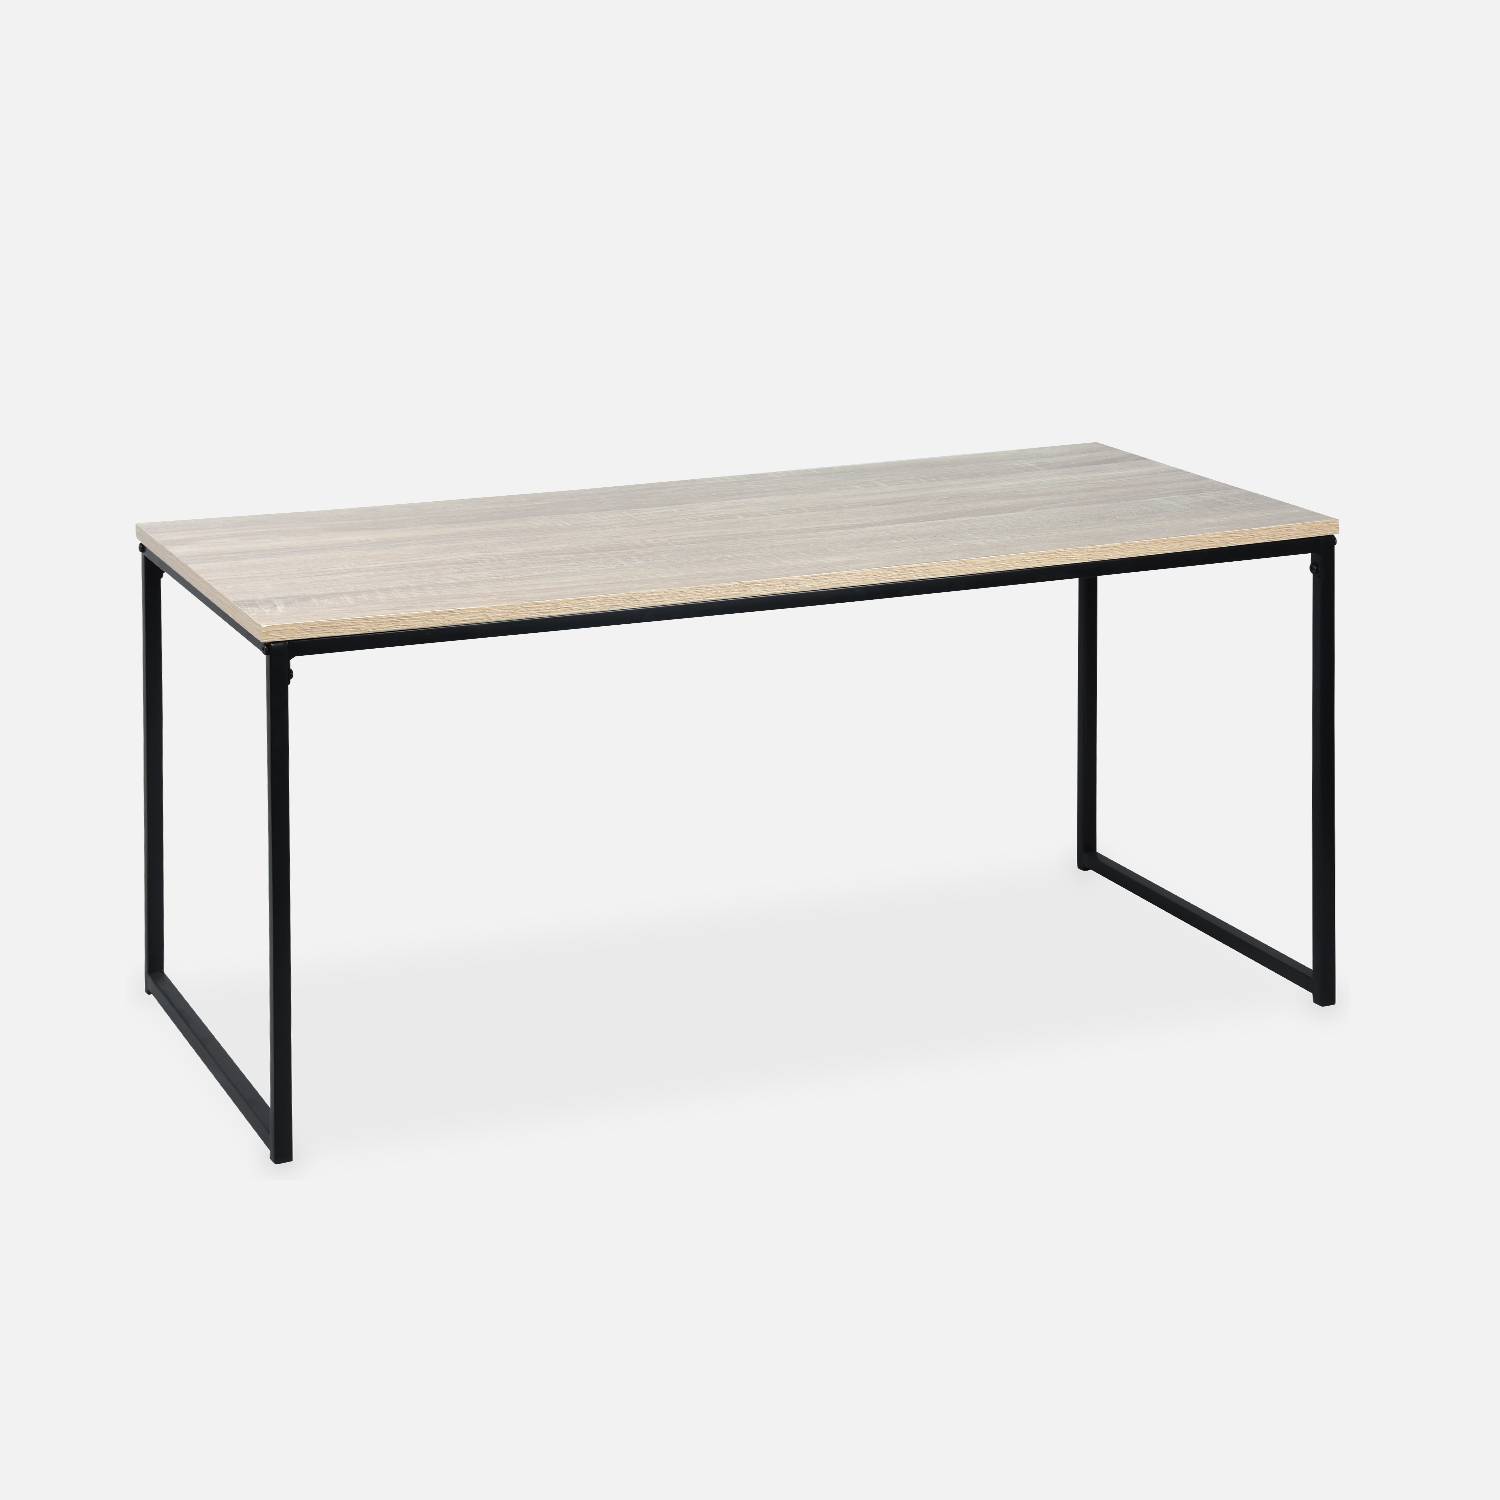  Tavolini da caffè in metallo e legno - Loft - Tavoli nidificanti, 100x48x48cm e 40x40x40cm Photo5